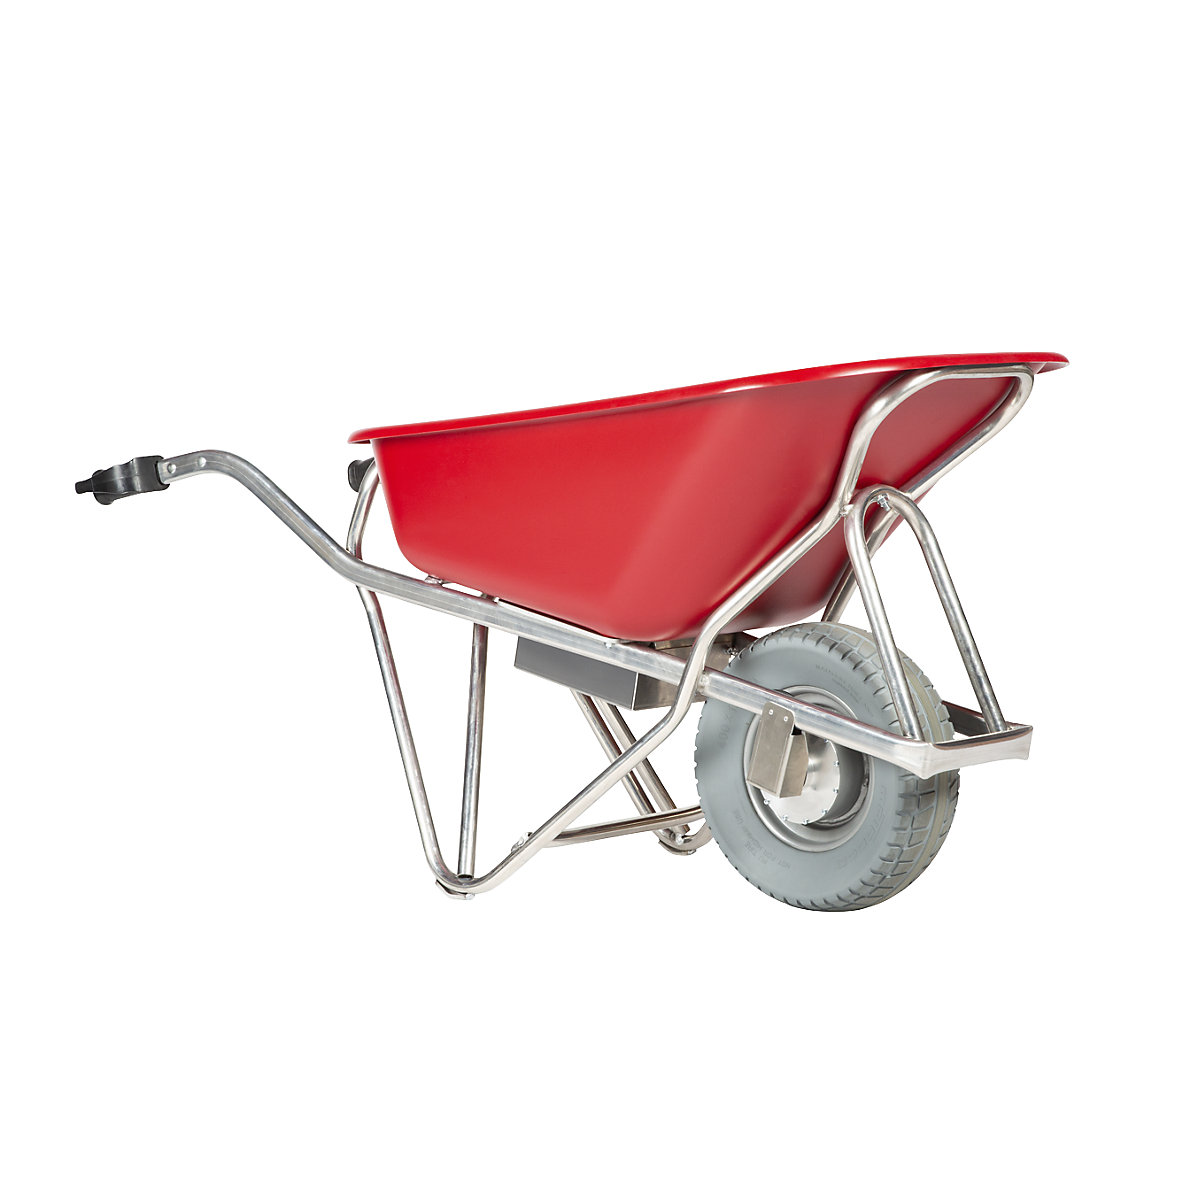 PROFI-MAX electric wheelbarrow - MATADOR